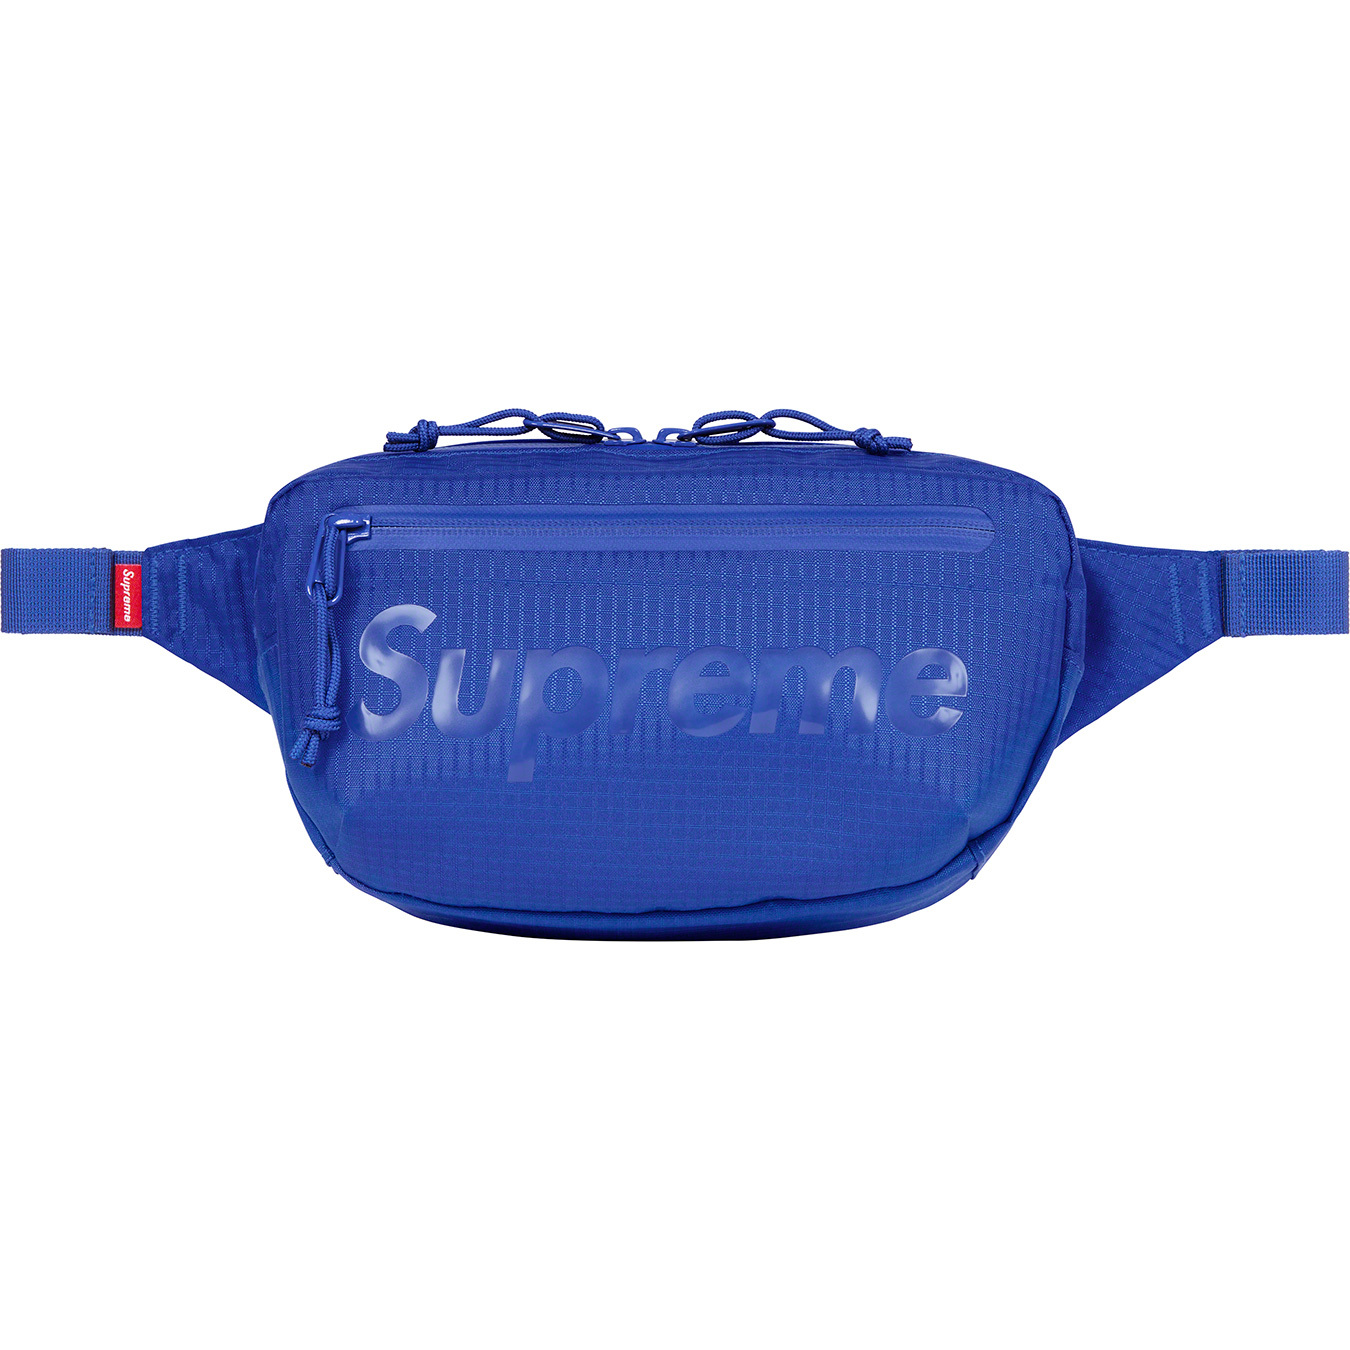 Supreme Supreme SS21 Waist Bag